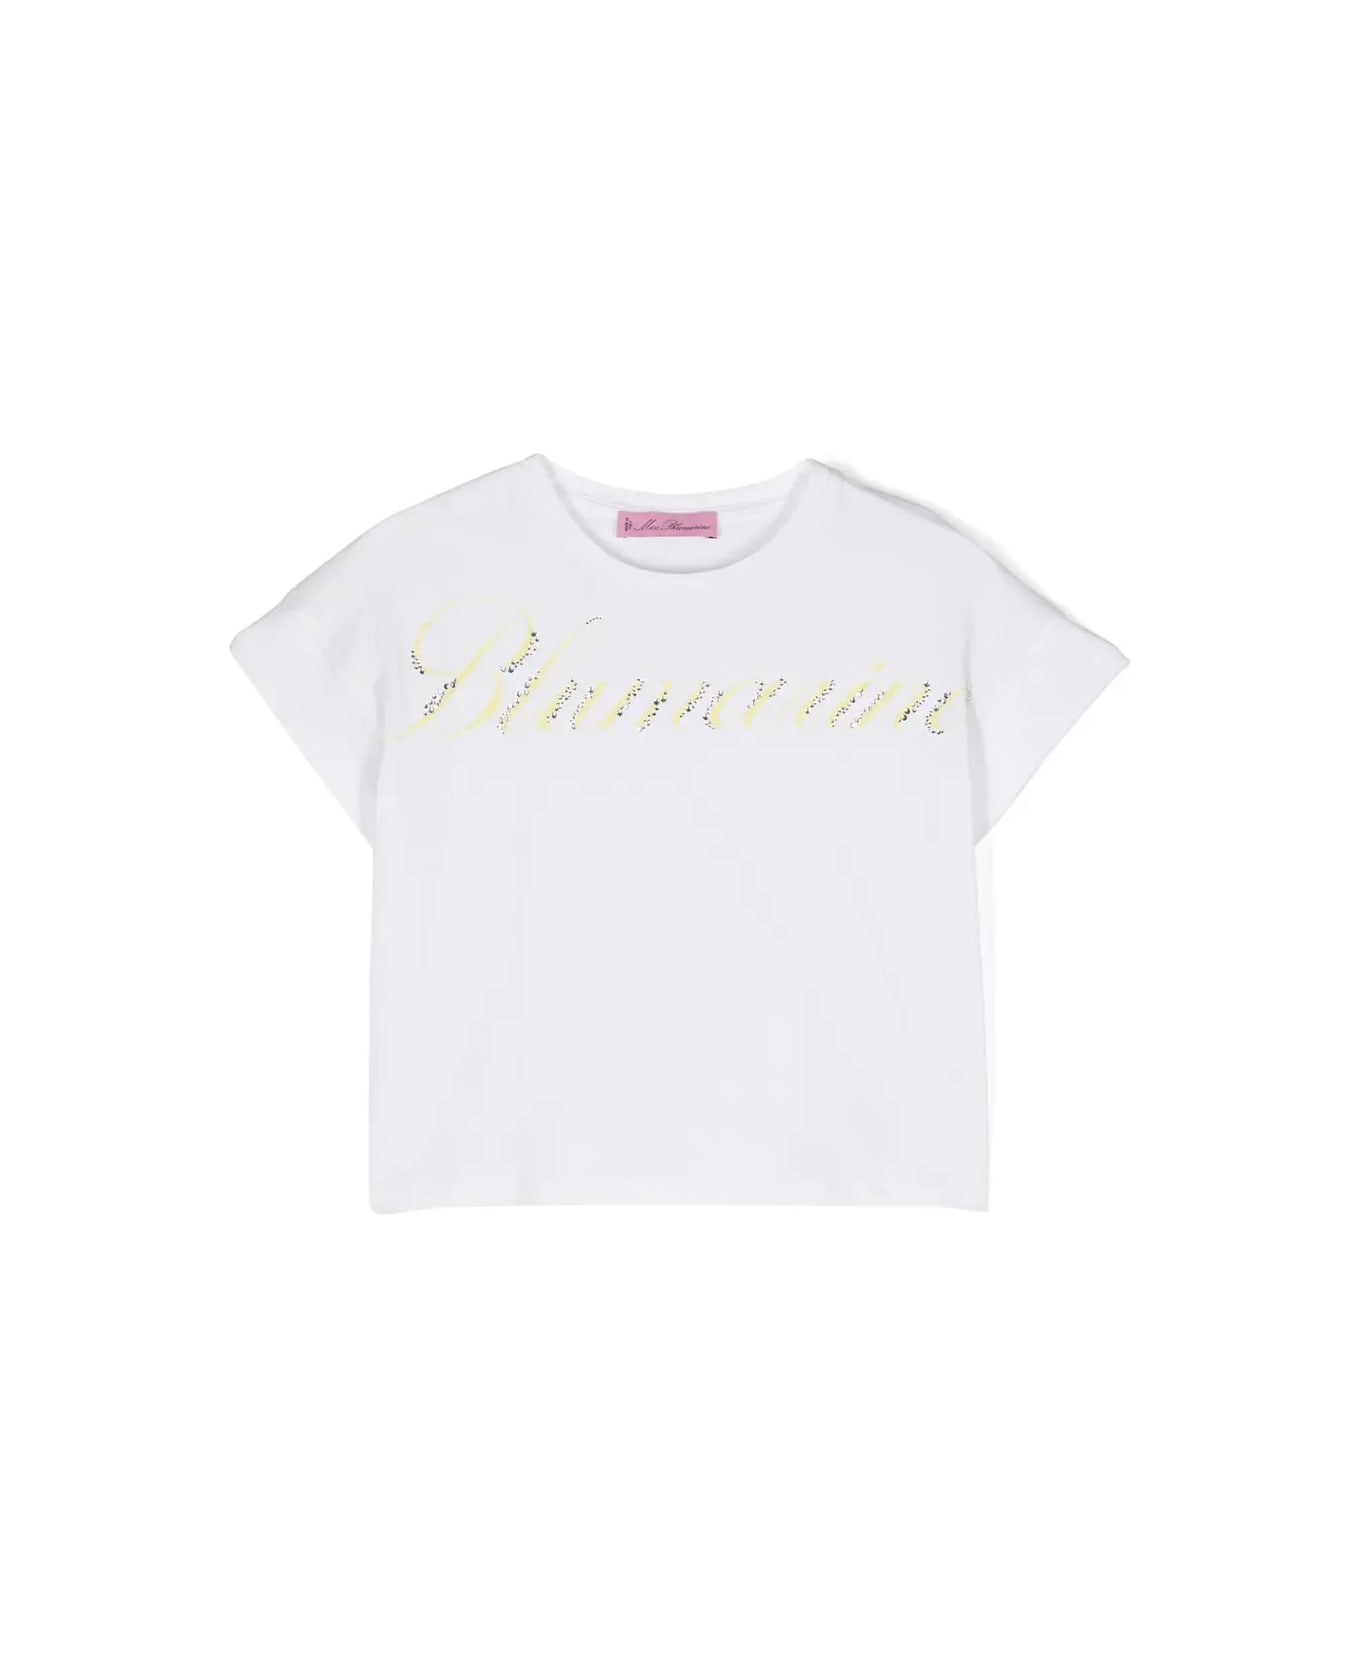 Miss Blumarine White T-shirt With Logo Print With Rhinestones - White